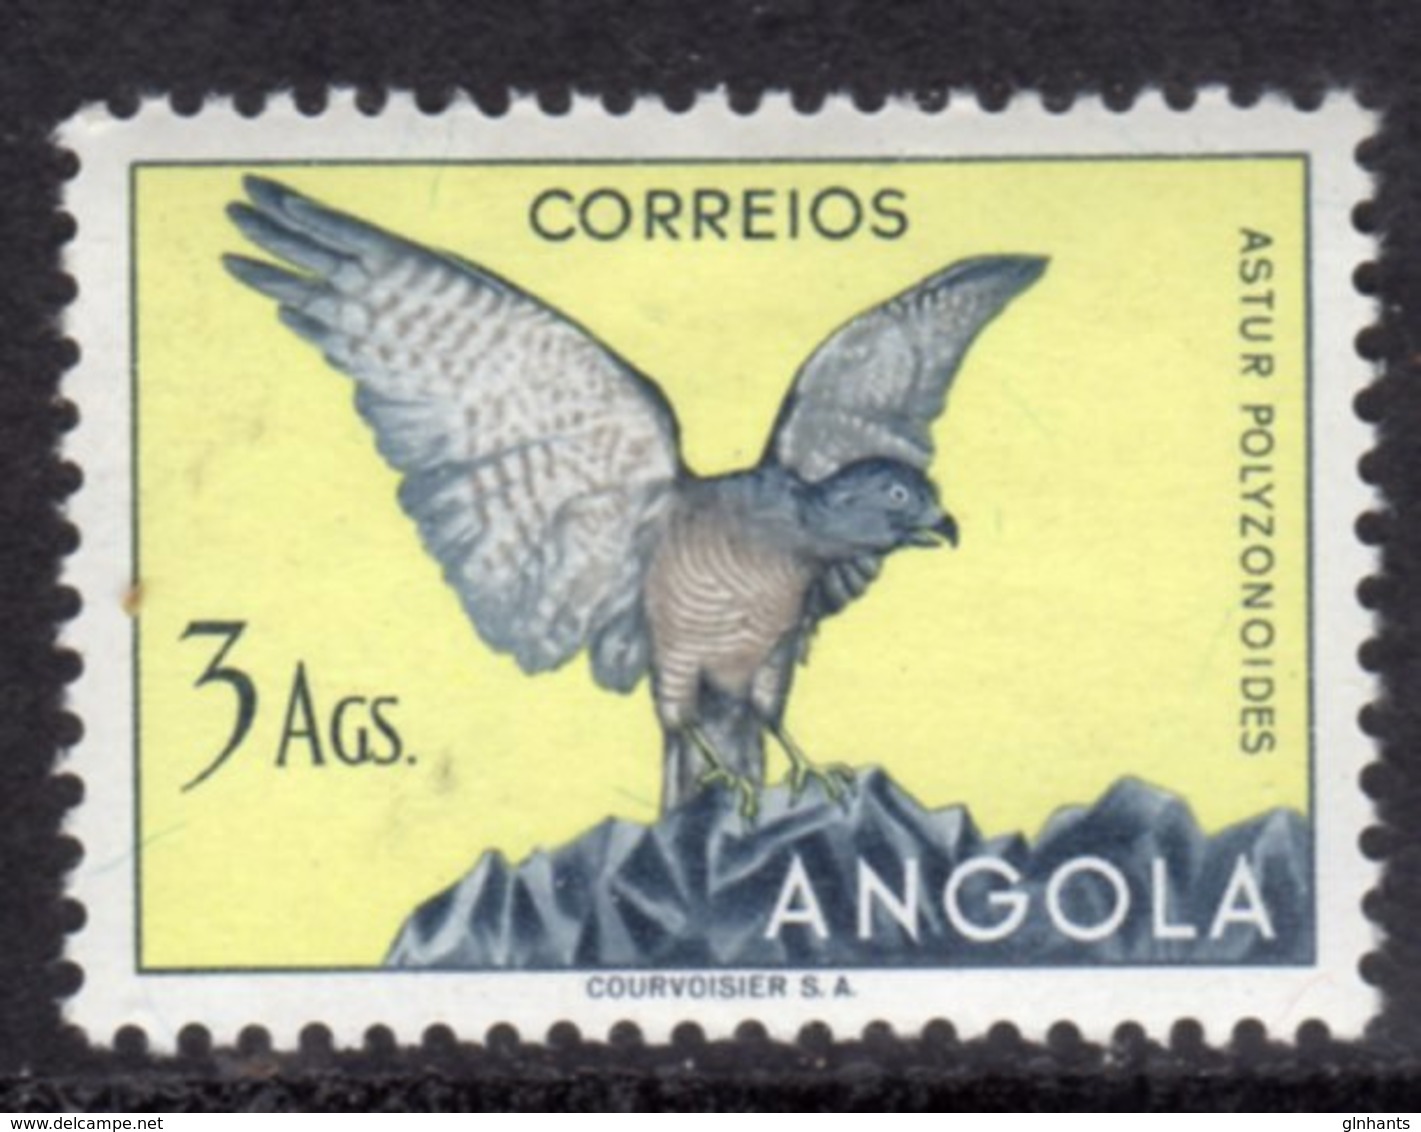 ANGOLA - 1951 3Ag SHIKRA BIRD STAMP MOUNTED MINT MM * SG 467 - Angola